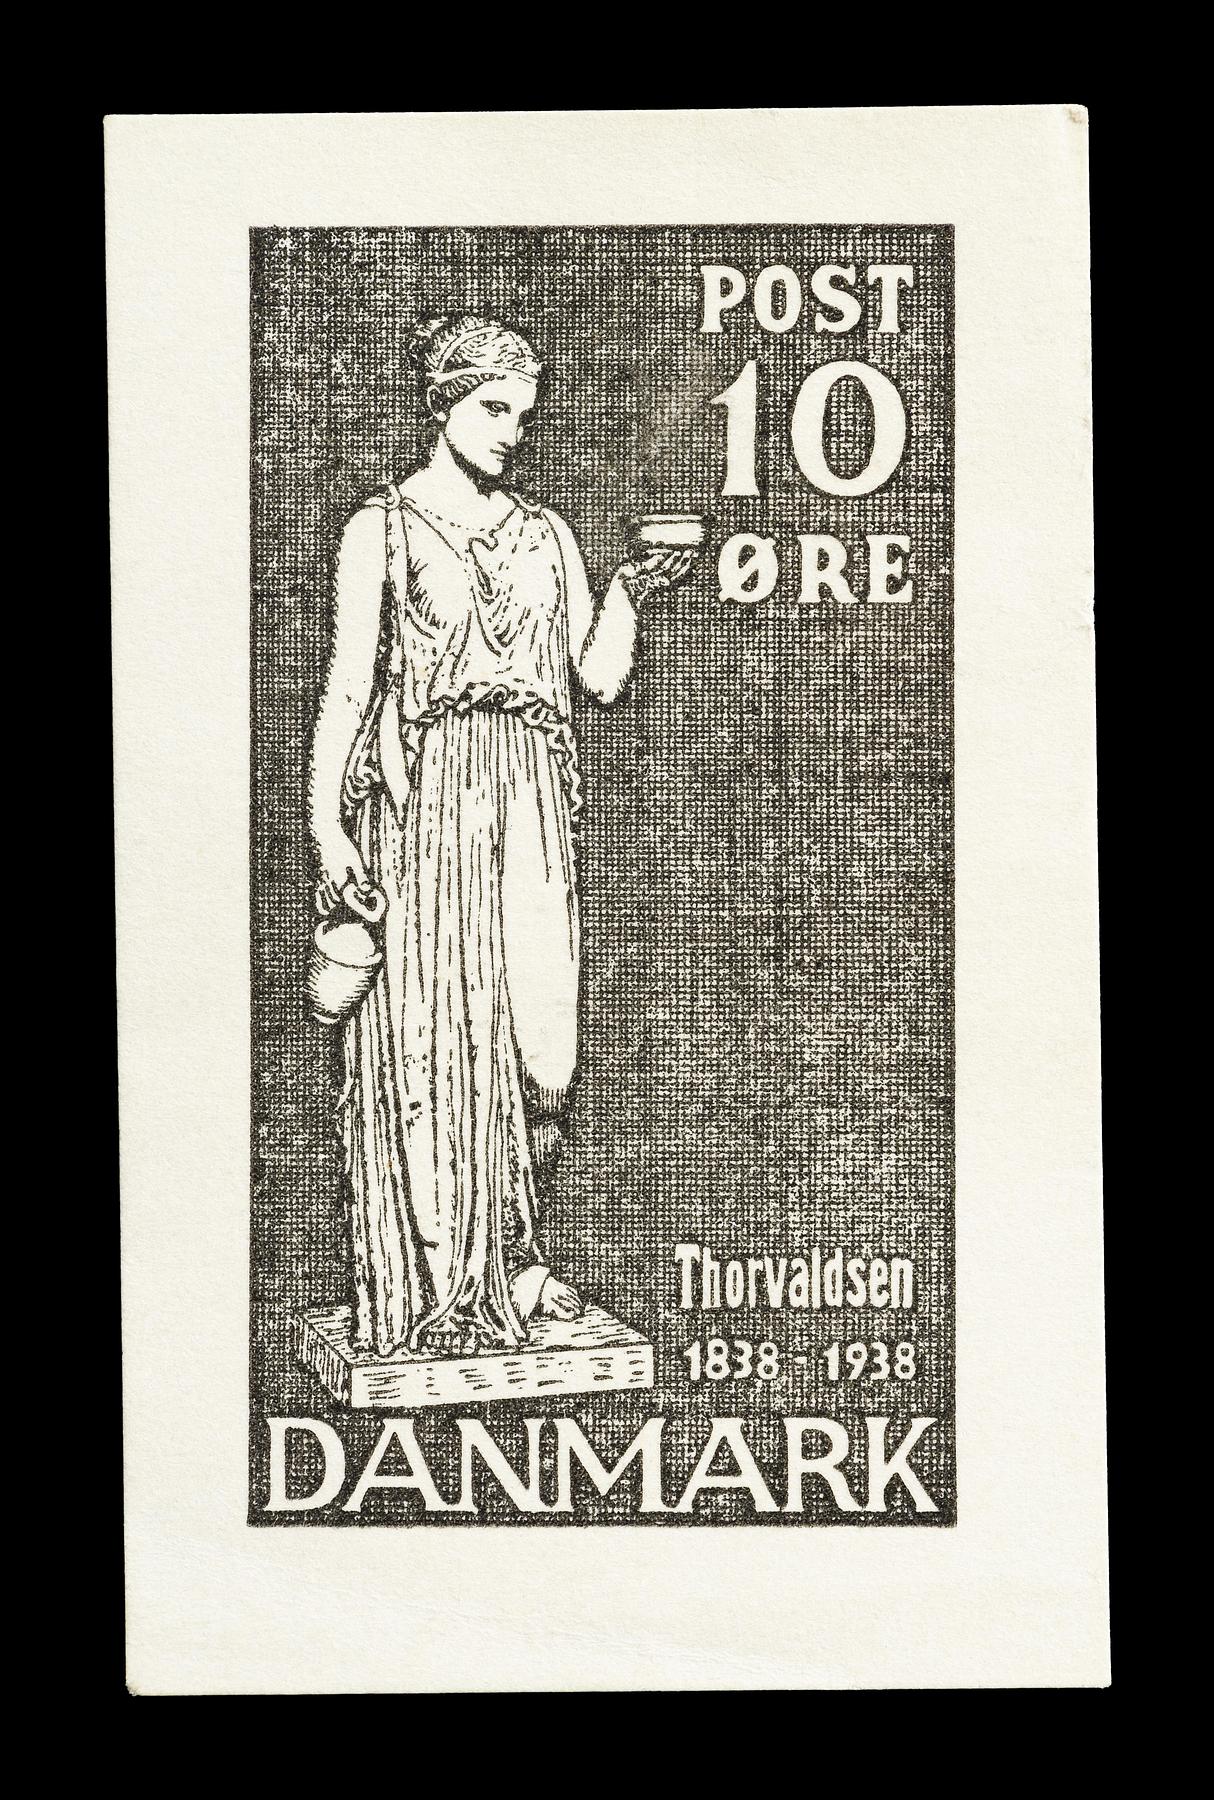 Prøvetryk af udkast til et dansk frimærke med Thorvaldsens Hebe, E2341,1